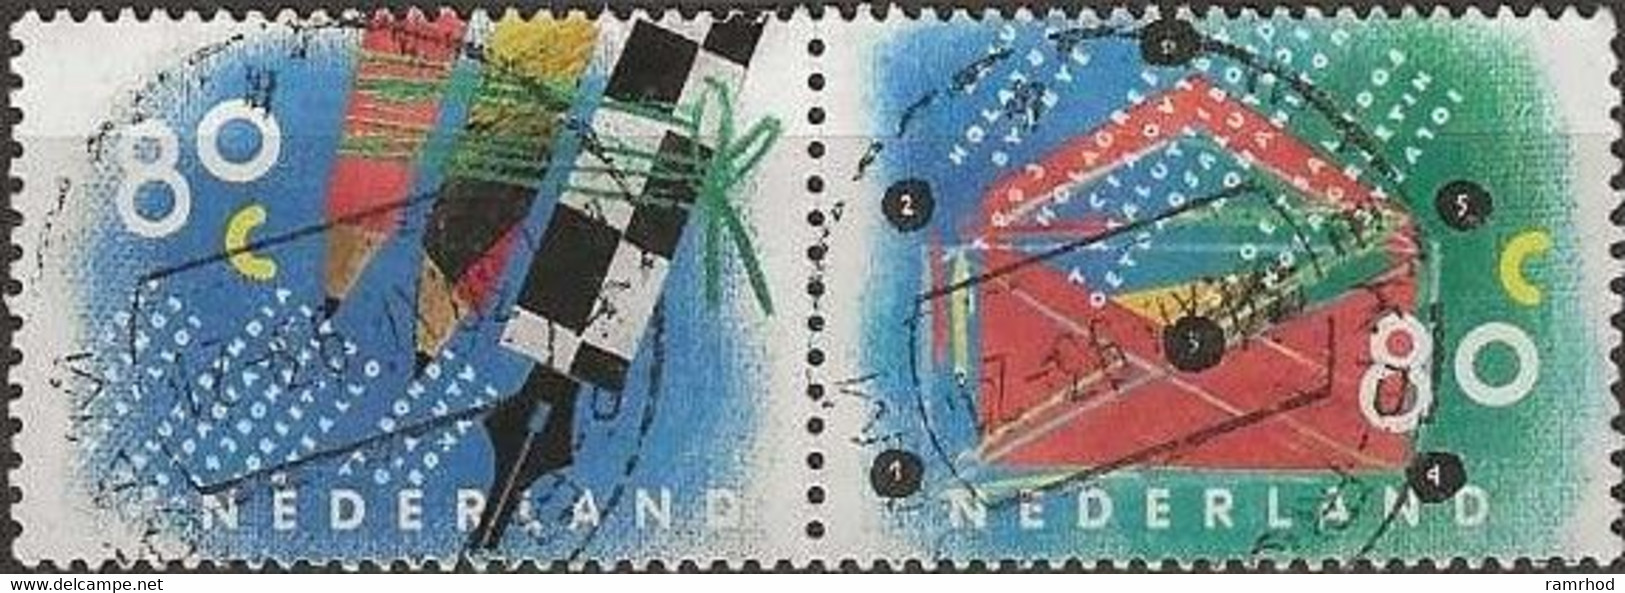 NETHERLANDS 1993 Letter Writing Campaign - 80c X 2 Envelope & Pen & Pencils FU PAIR - Oblitérés